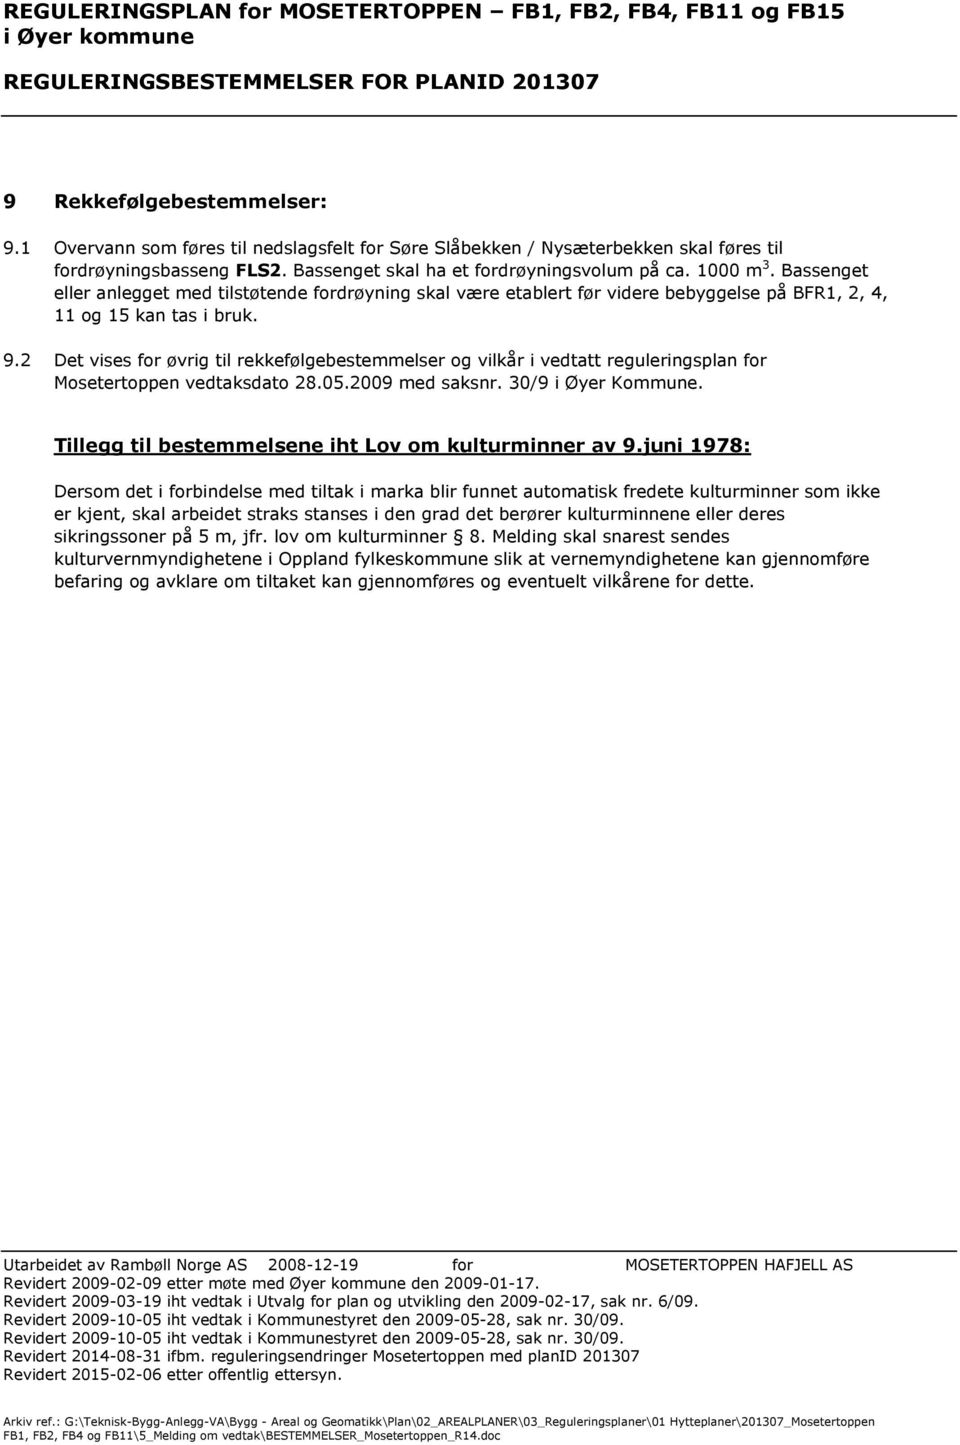 2 Det vises for øvrig til rekkefølgebestemmelser og vilkår i vedtatt reguleringsplan for Mosetertoppen vedtaksdato 28.05.2009 med saksnr. 30/9 i Øyer Kommune.